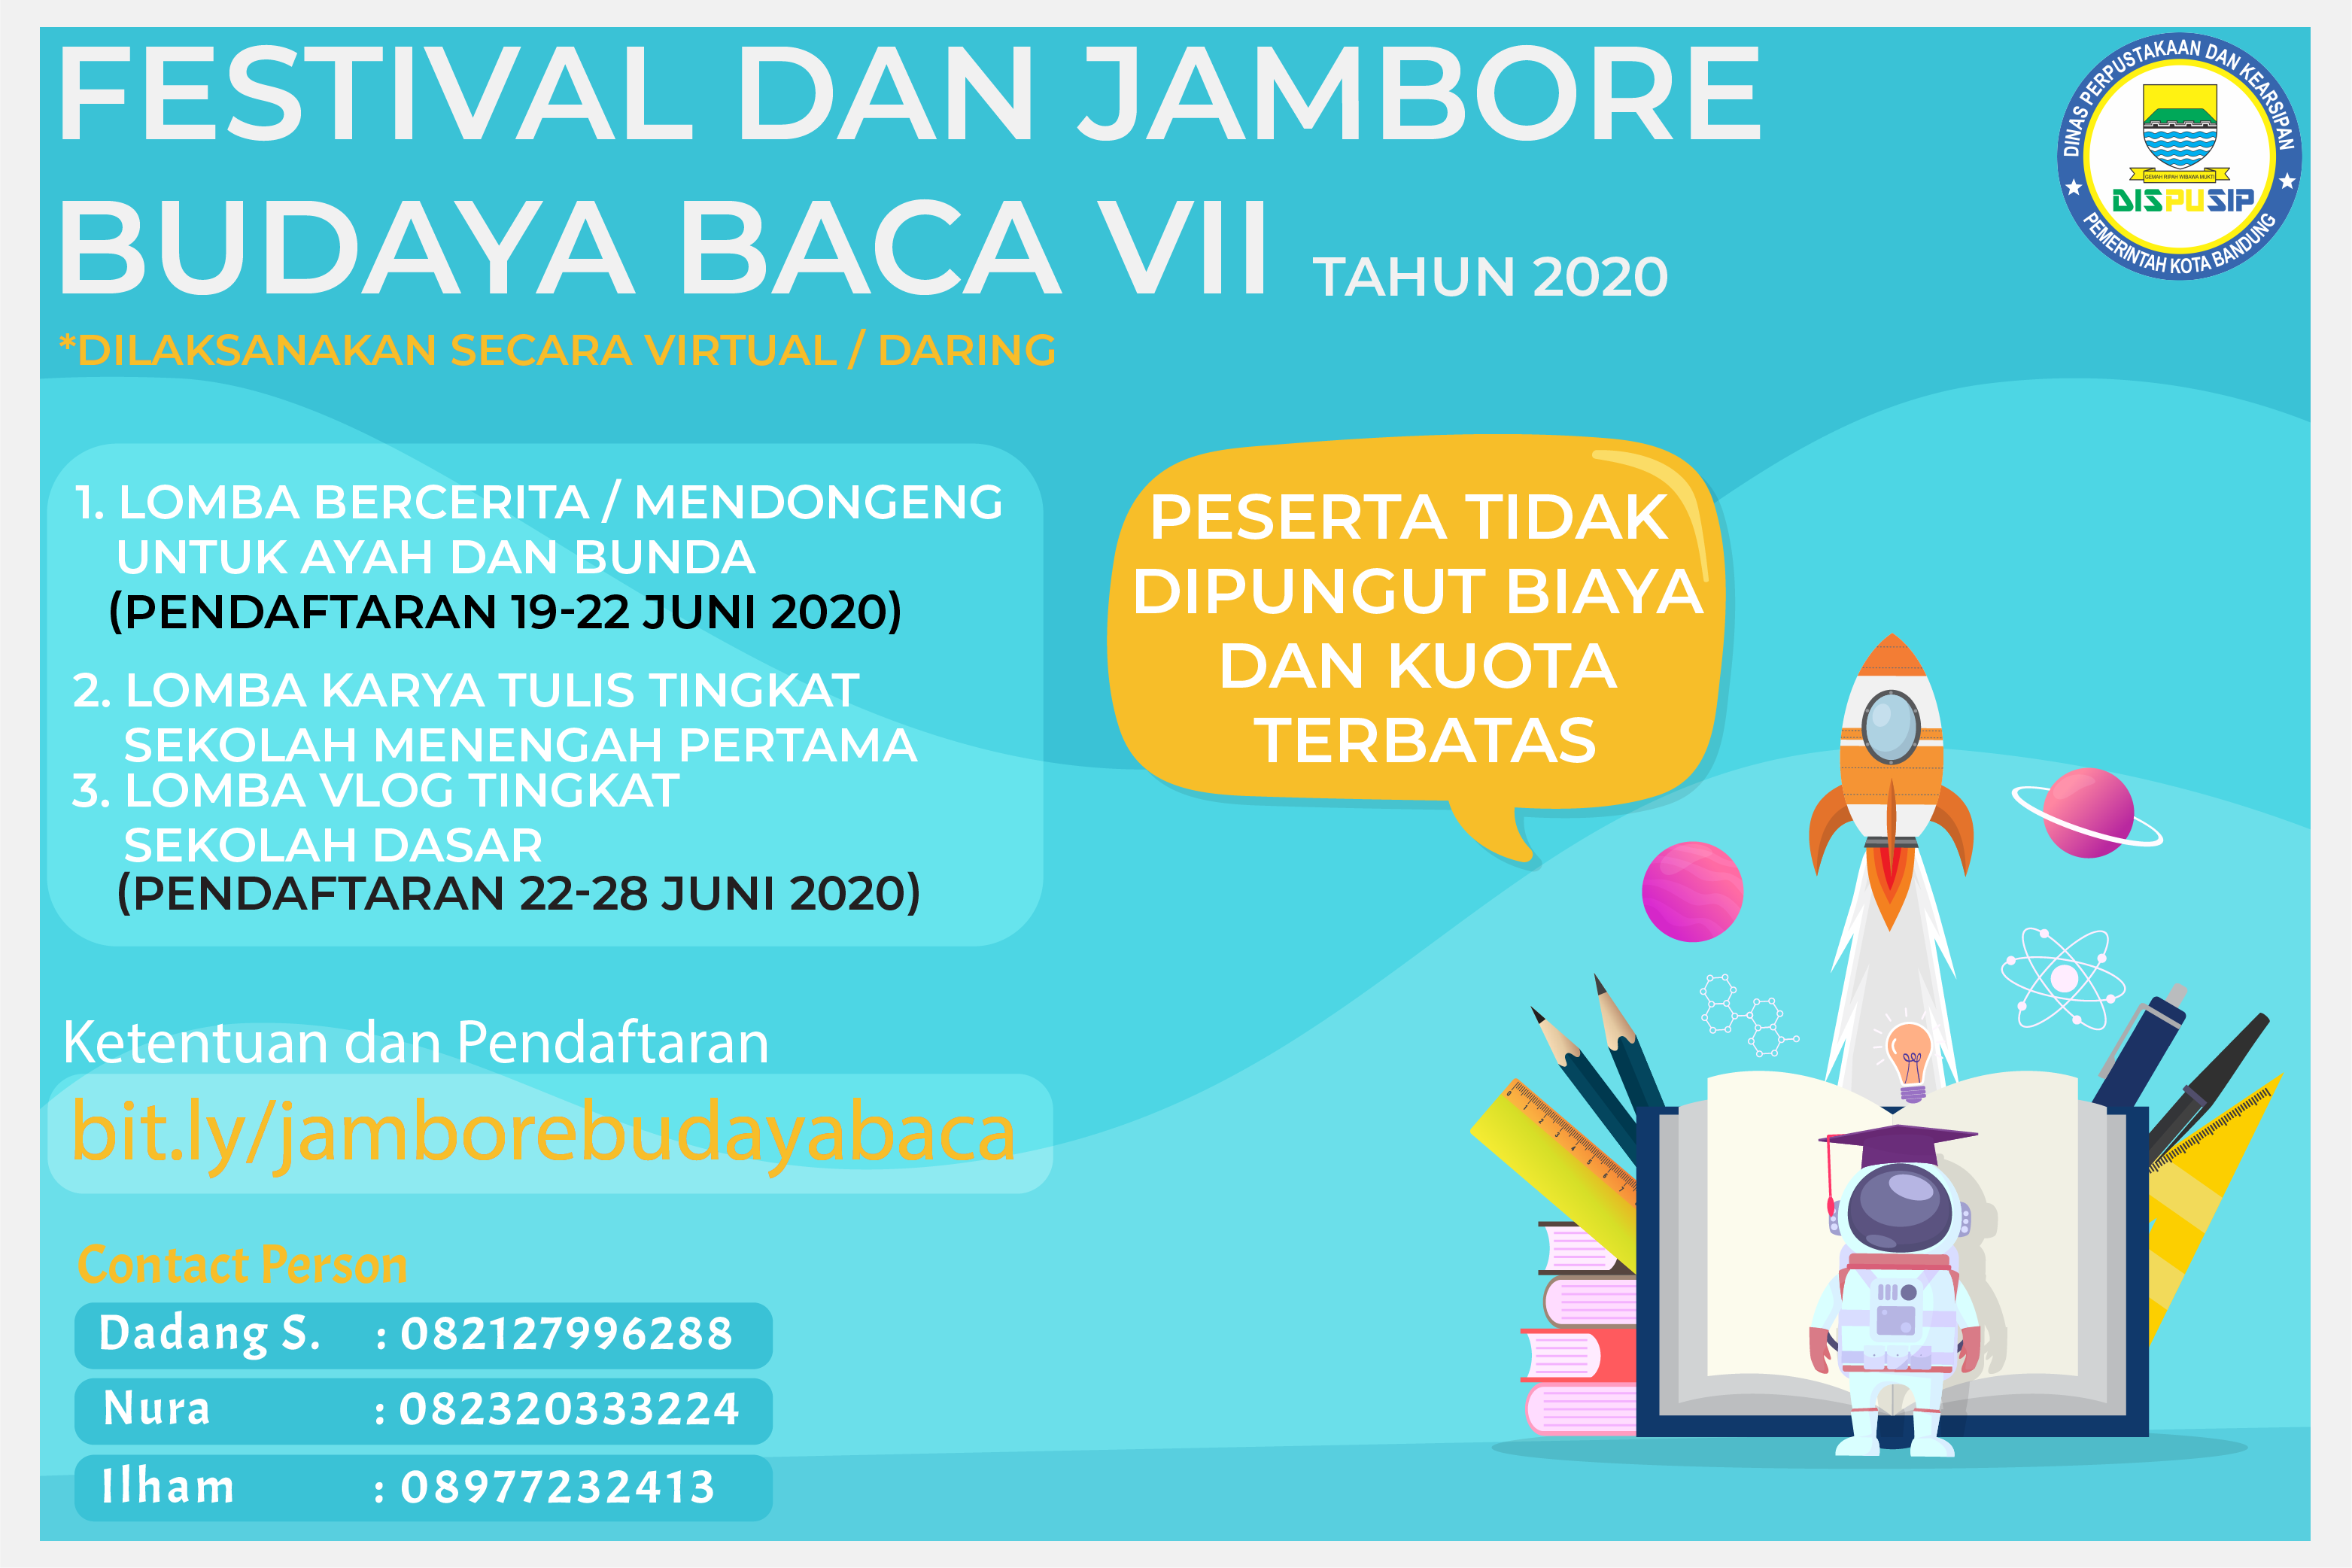 Festival dan Jambore Budaya Baca VII